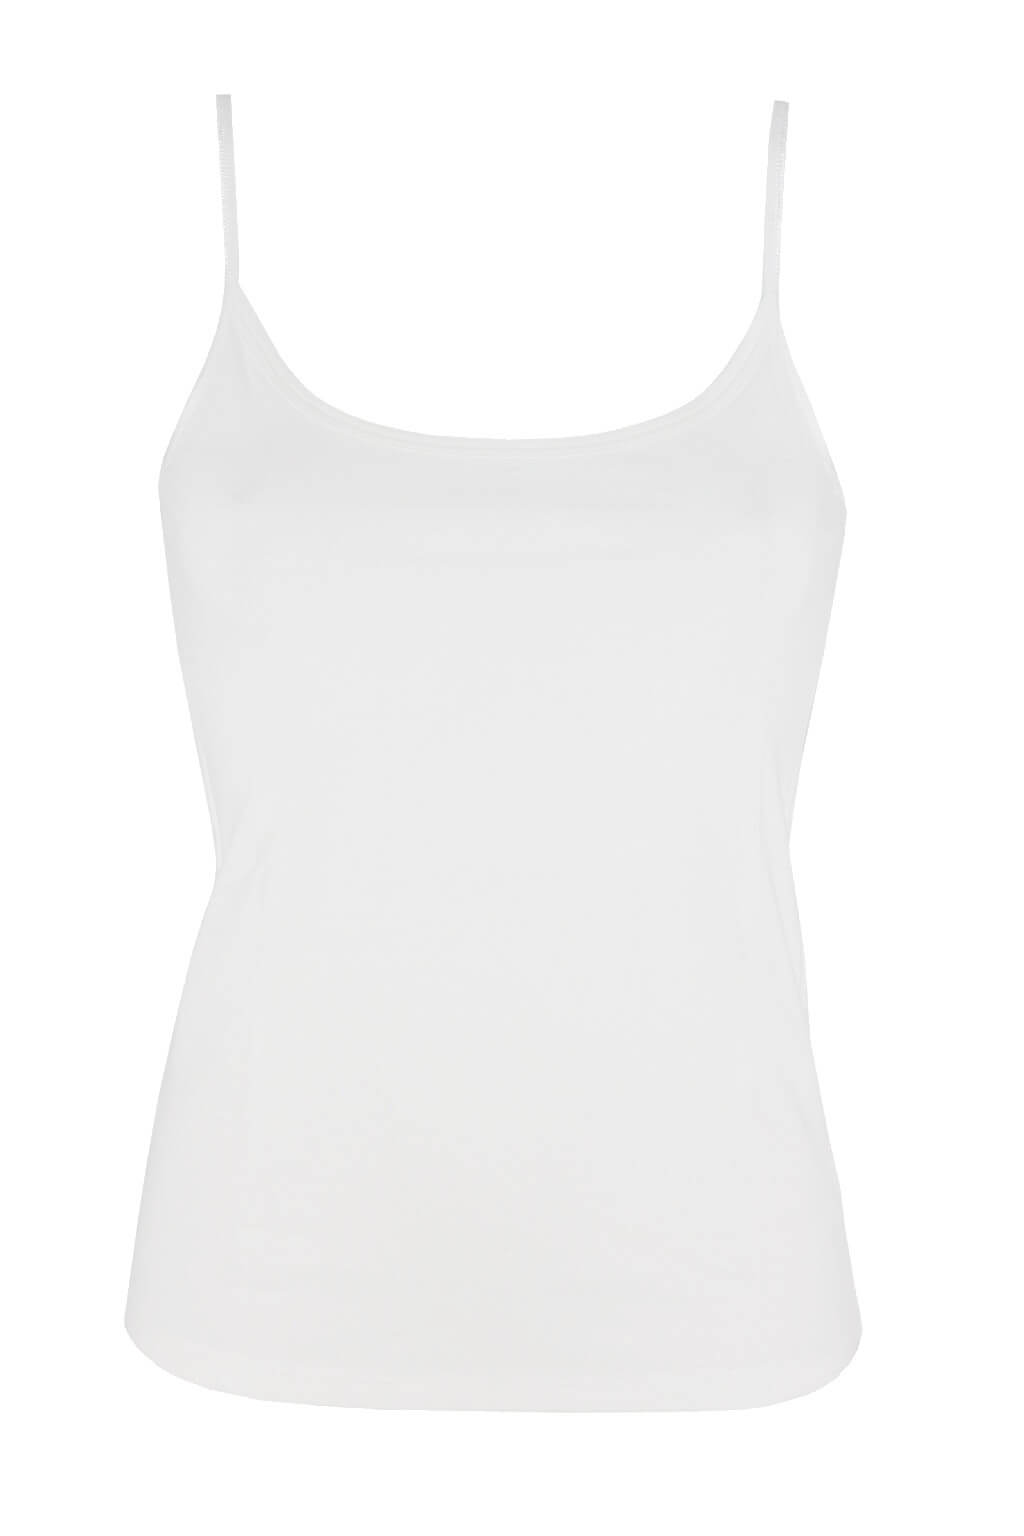 Bellinda Blanco bavlněná spodní košilka 818104 L bílá